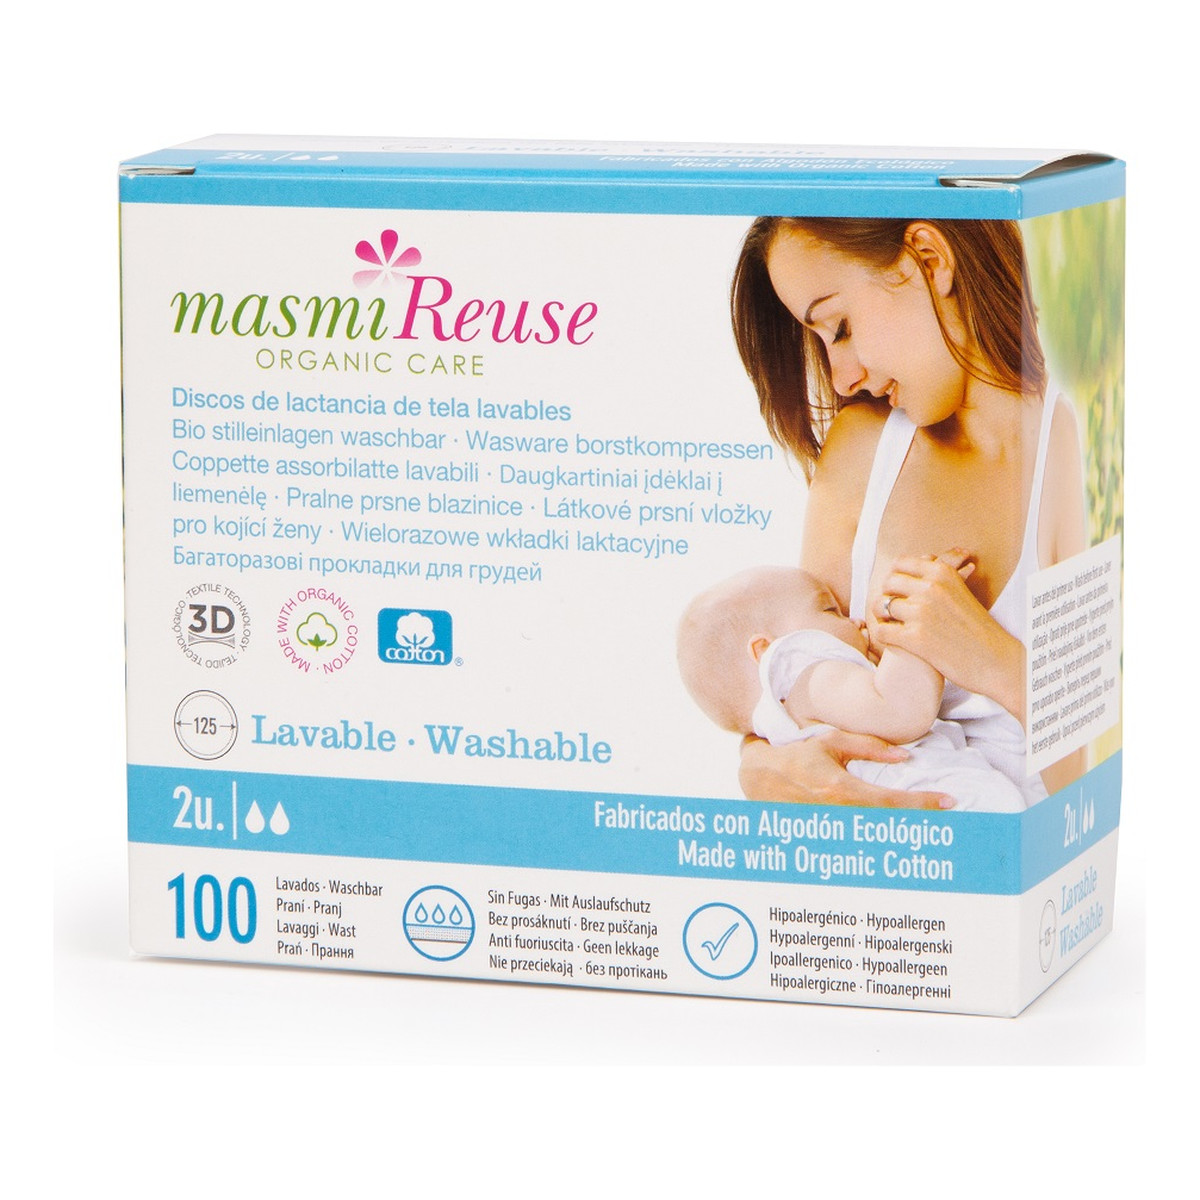 MASMI Reuse organic care wkładki laktacyjne wielorazowe z bawełny organicznej 2szt